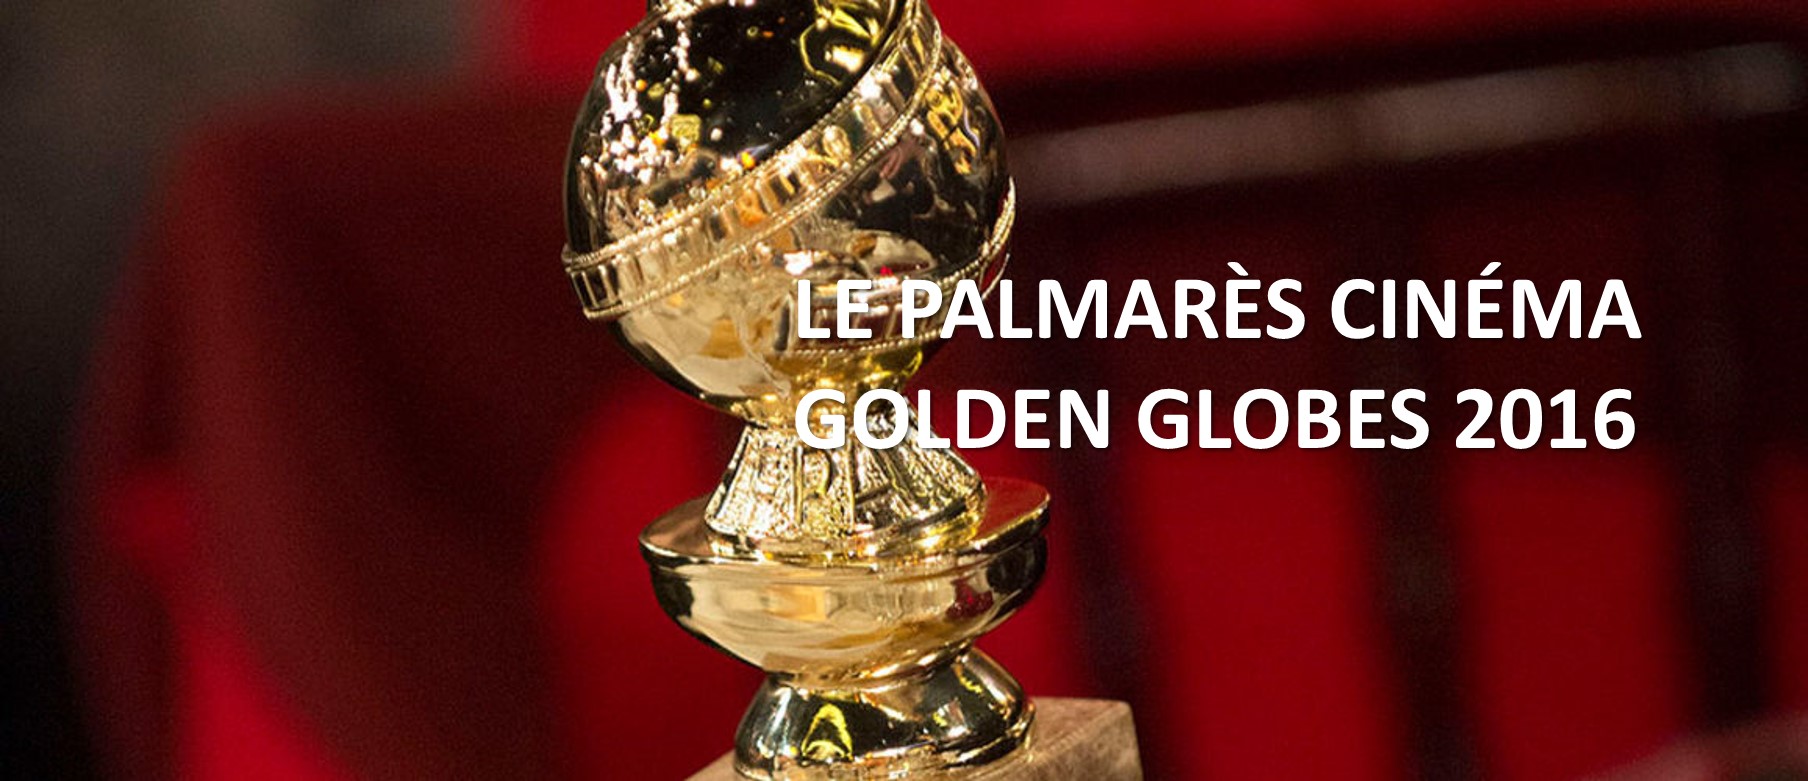 GOLDEN GLOBES 2016 - Trophées avec titre 3